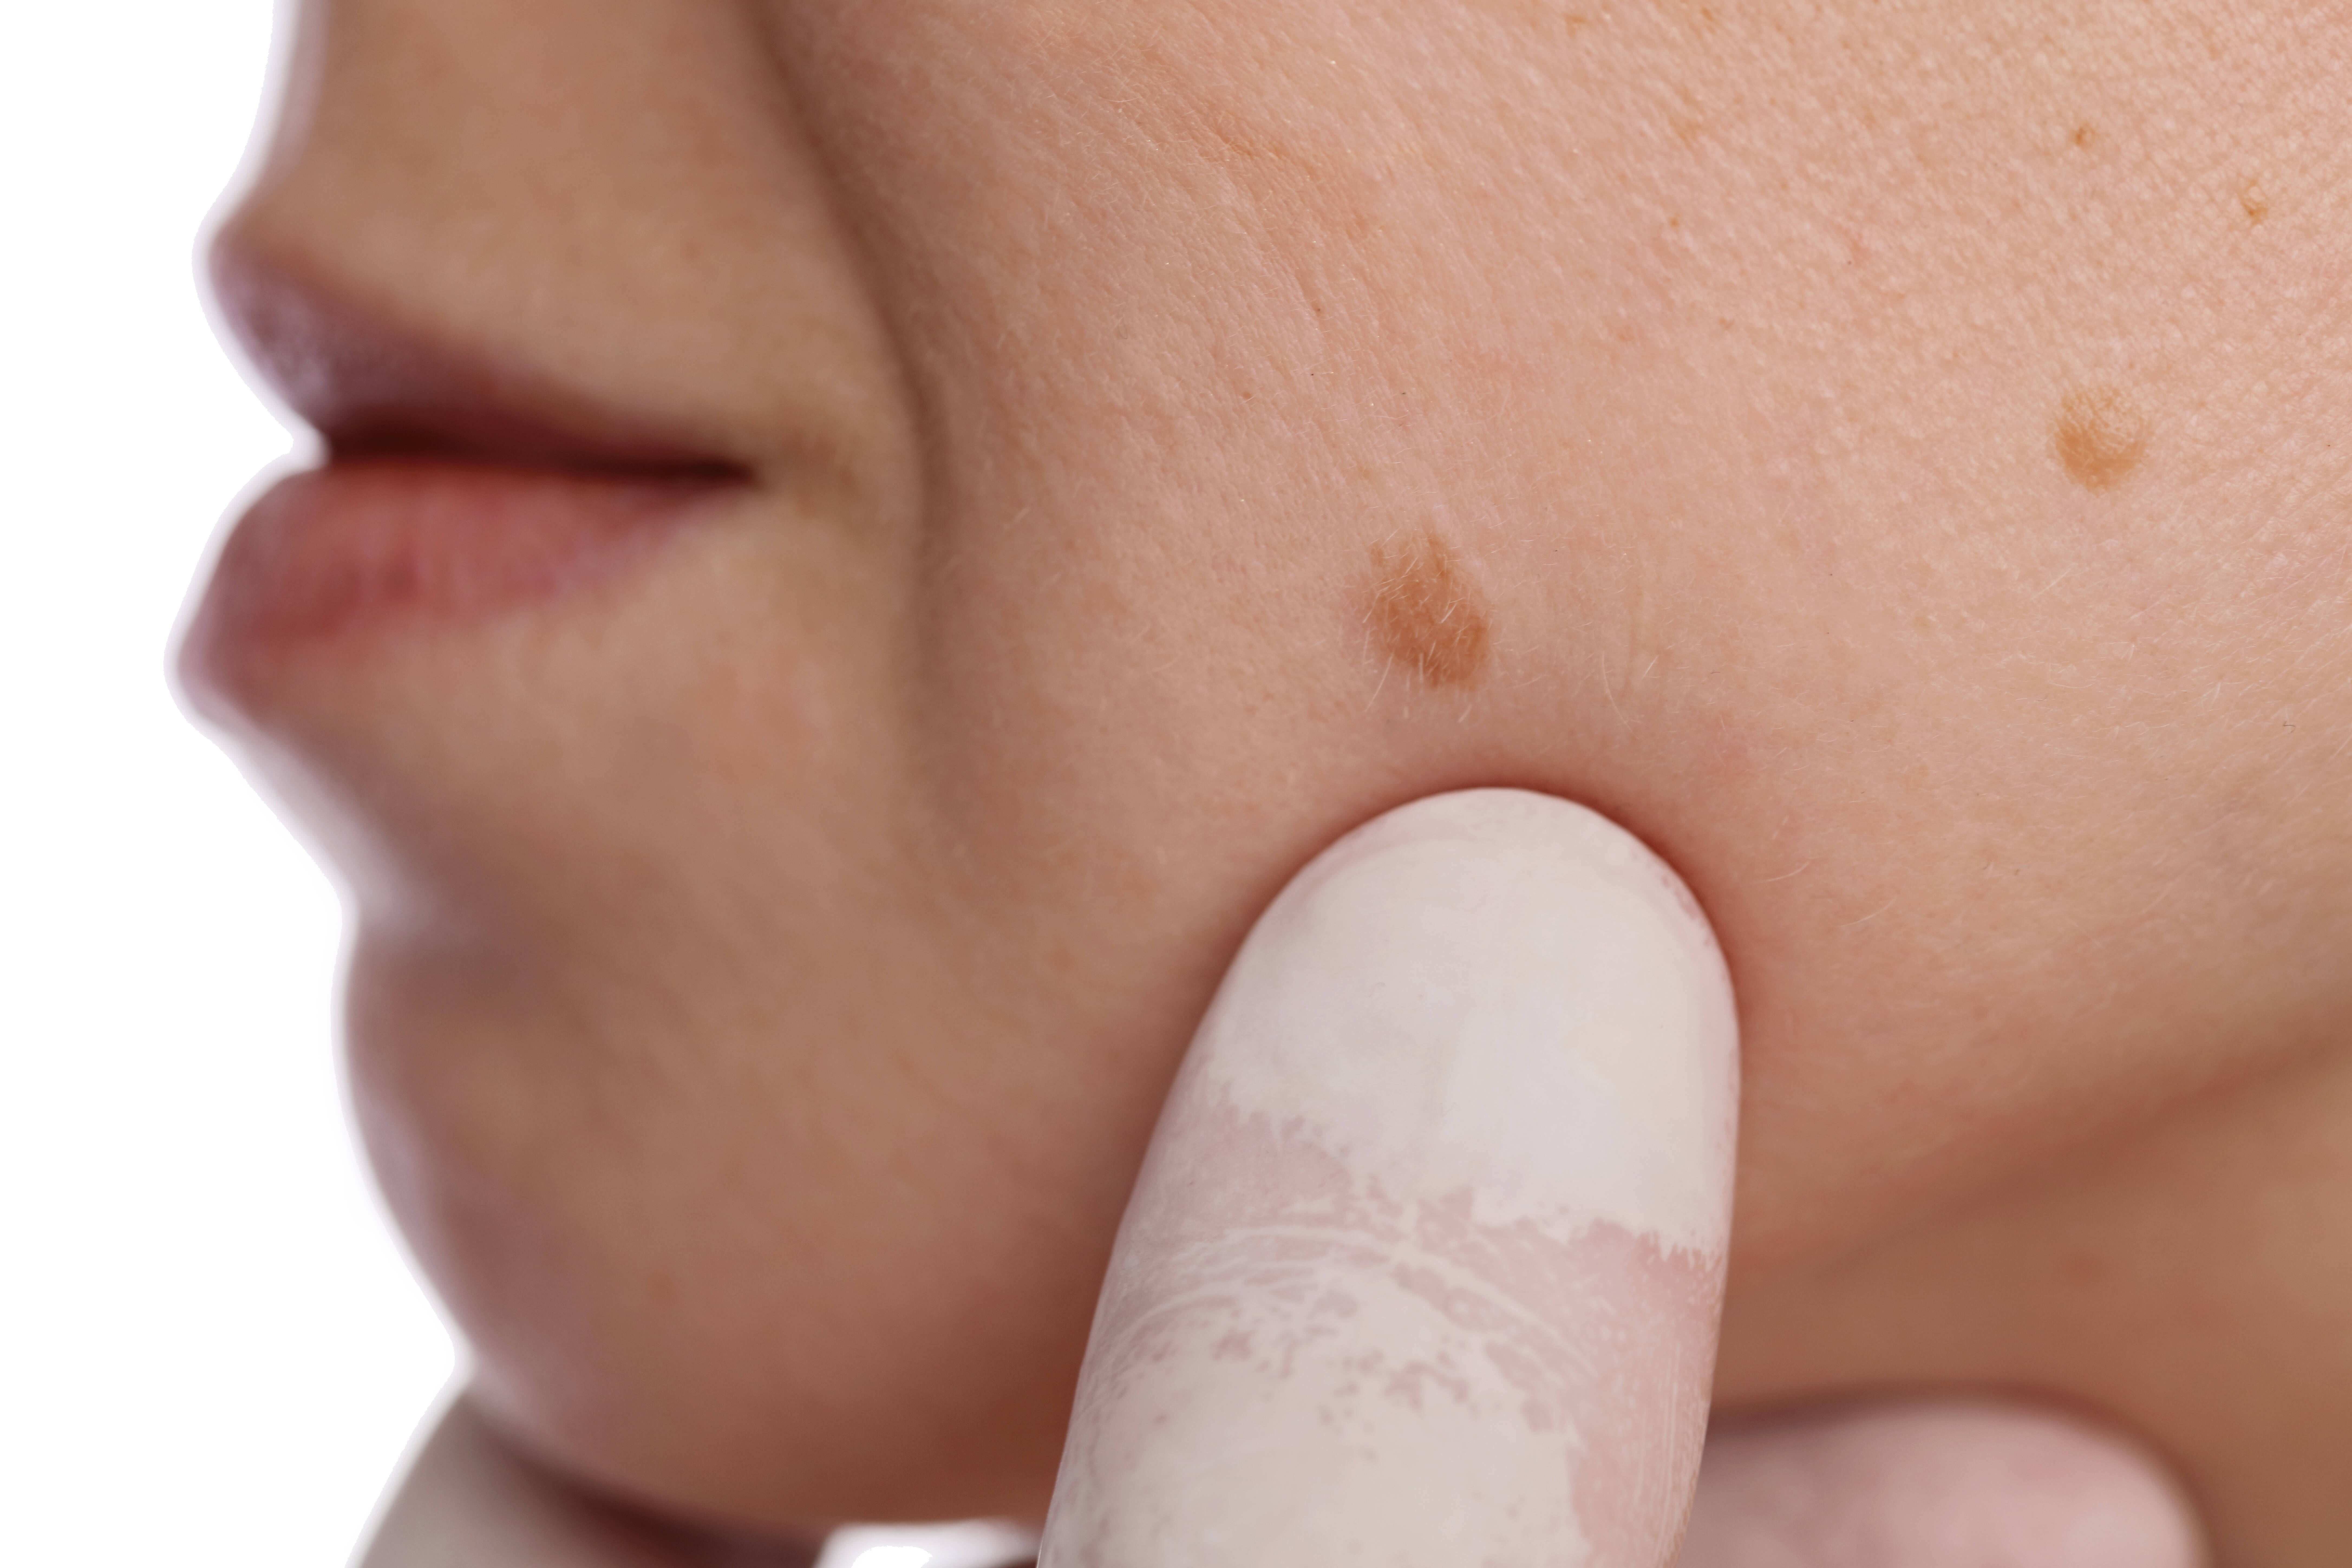 Manchas e pintas não devem ser ignoradas; consulte um dermatologista para um exame completo ao menos uma vez no ano. Foto: shutterstock/Reprodução